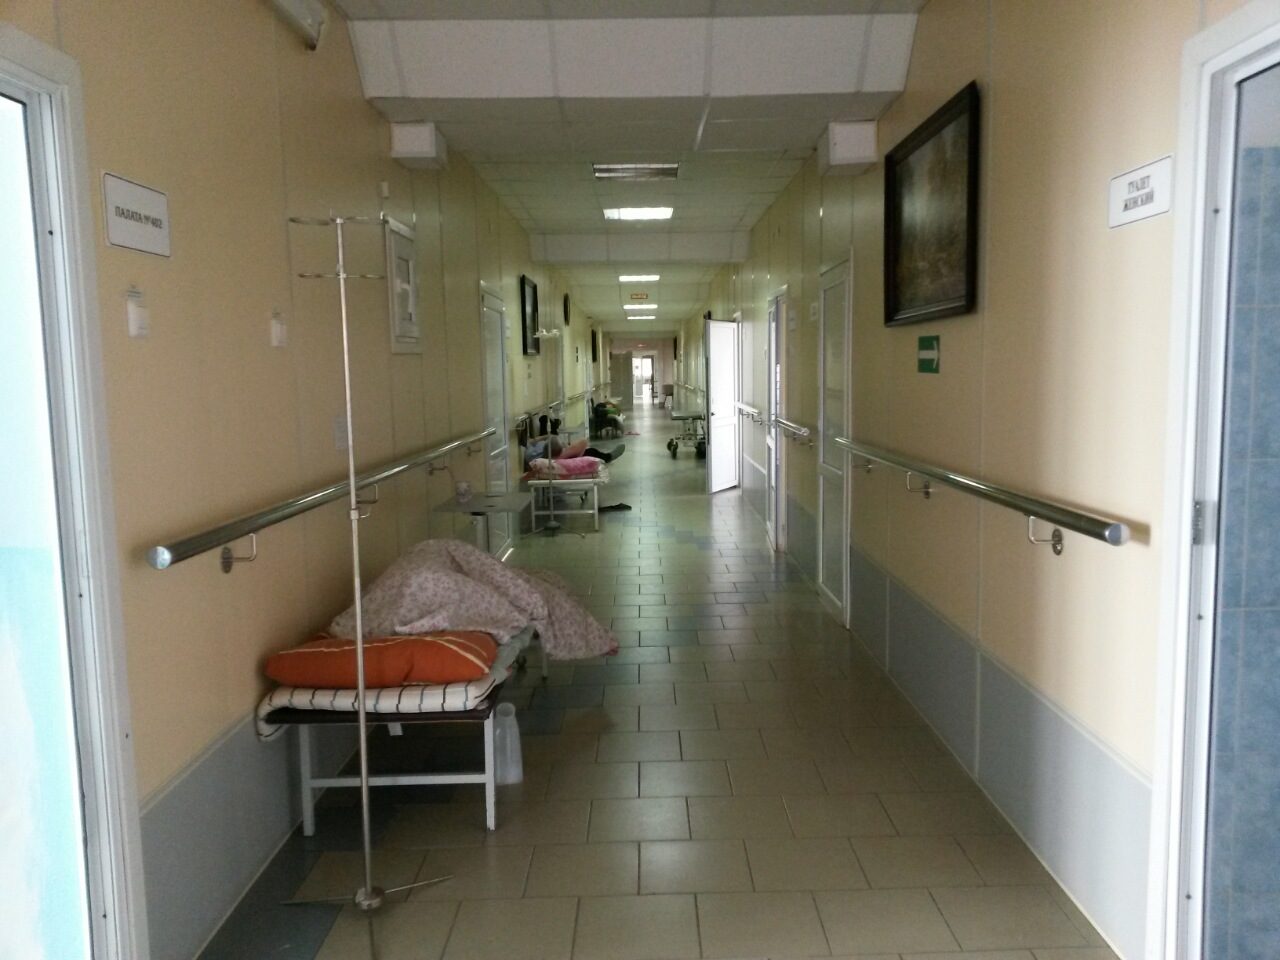 Пациенты в коридорах и работающие на износ медсестры. Медики сравнивают ситуацию в больнице Ирбита со Второй мировой войной. ФОТО - Фото 2